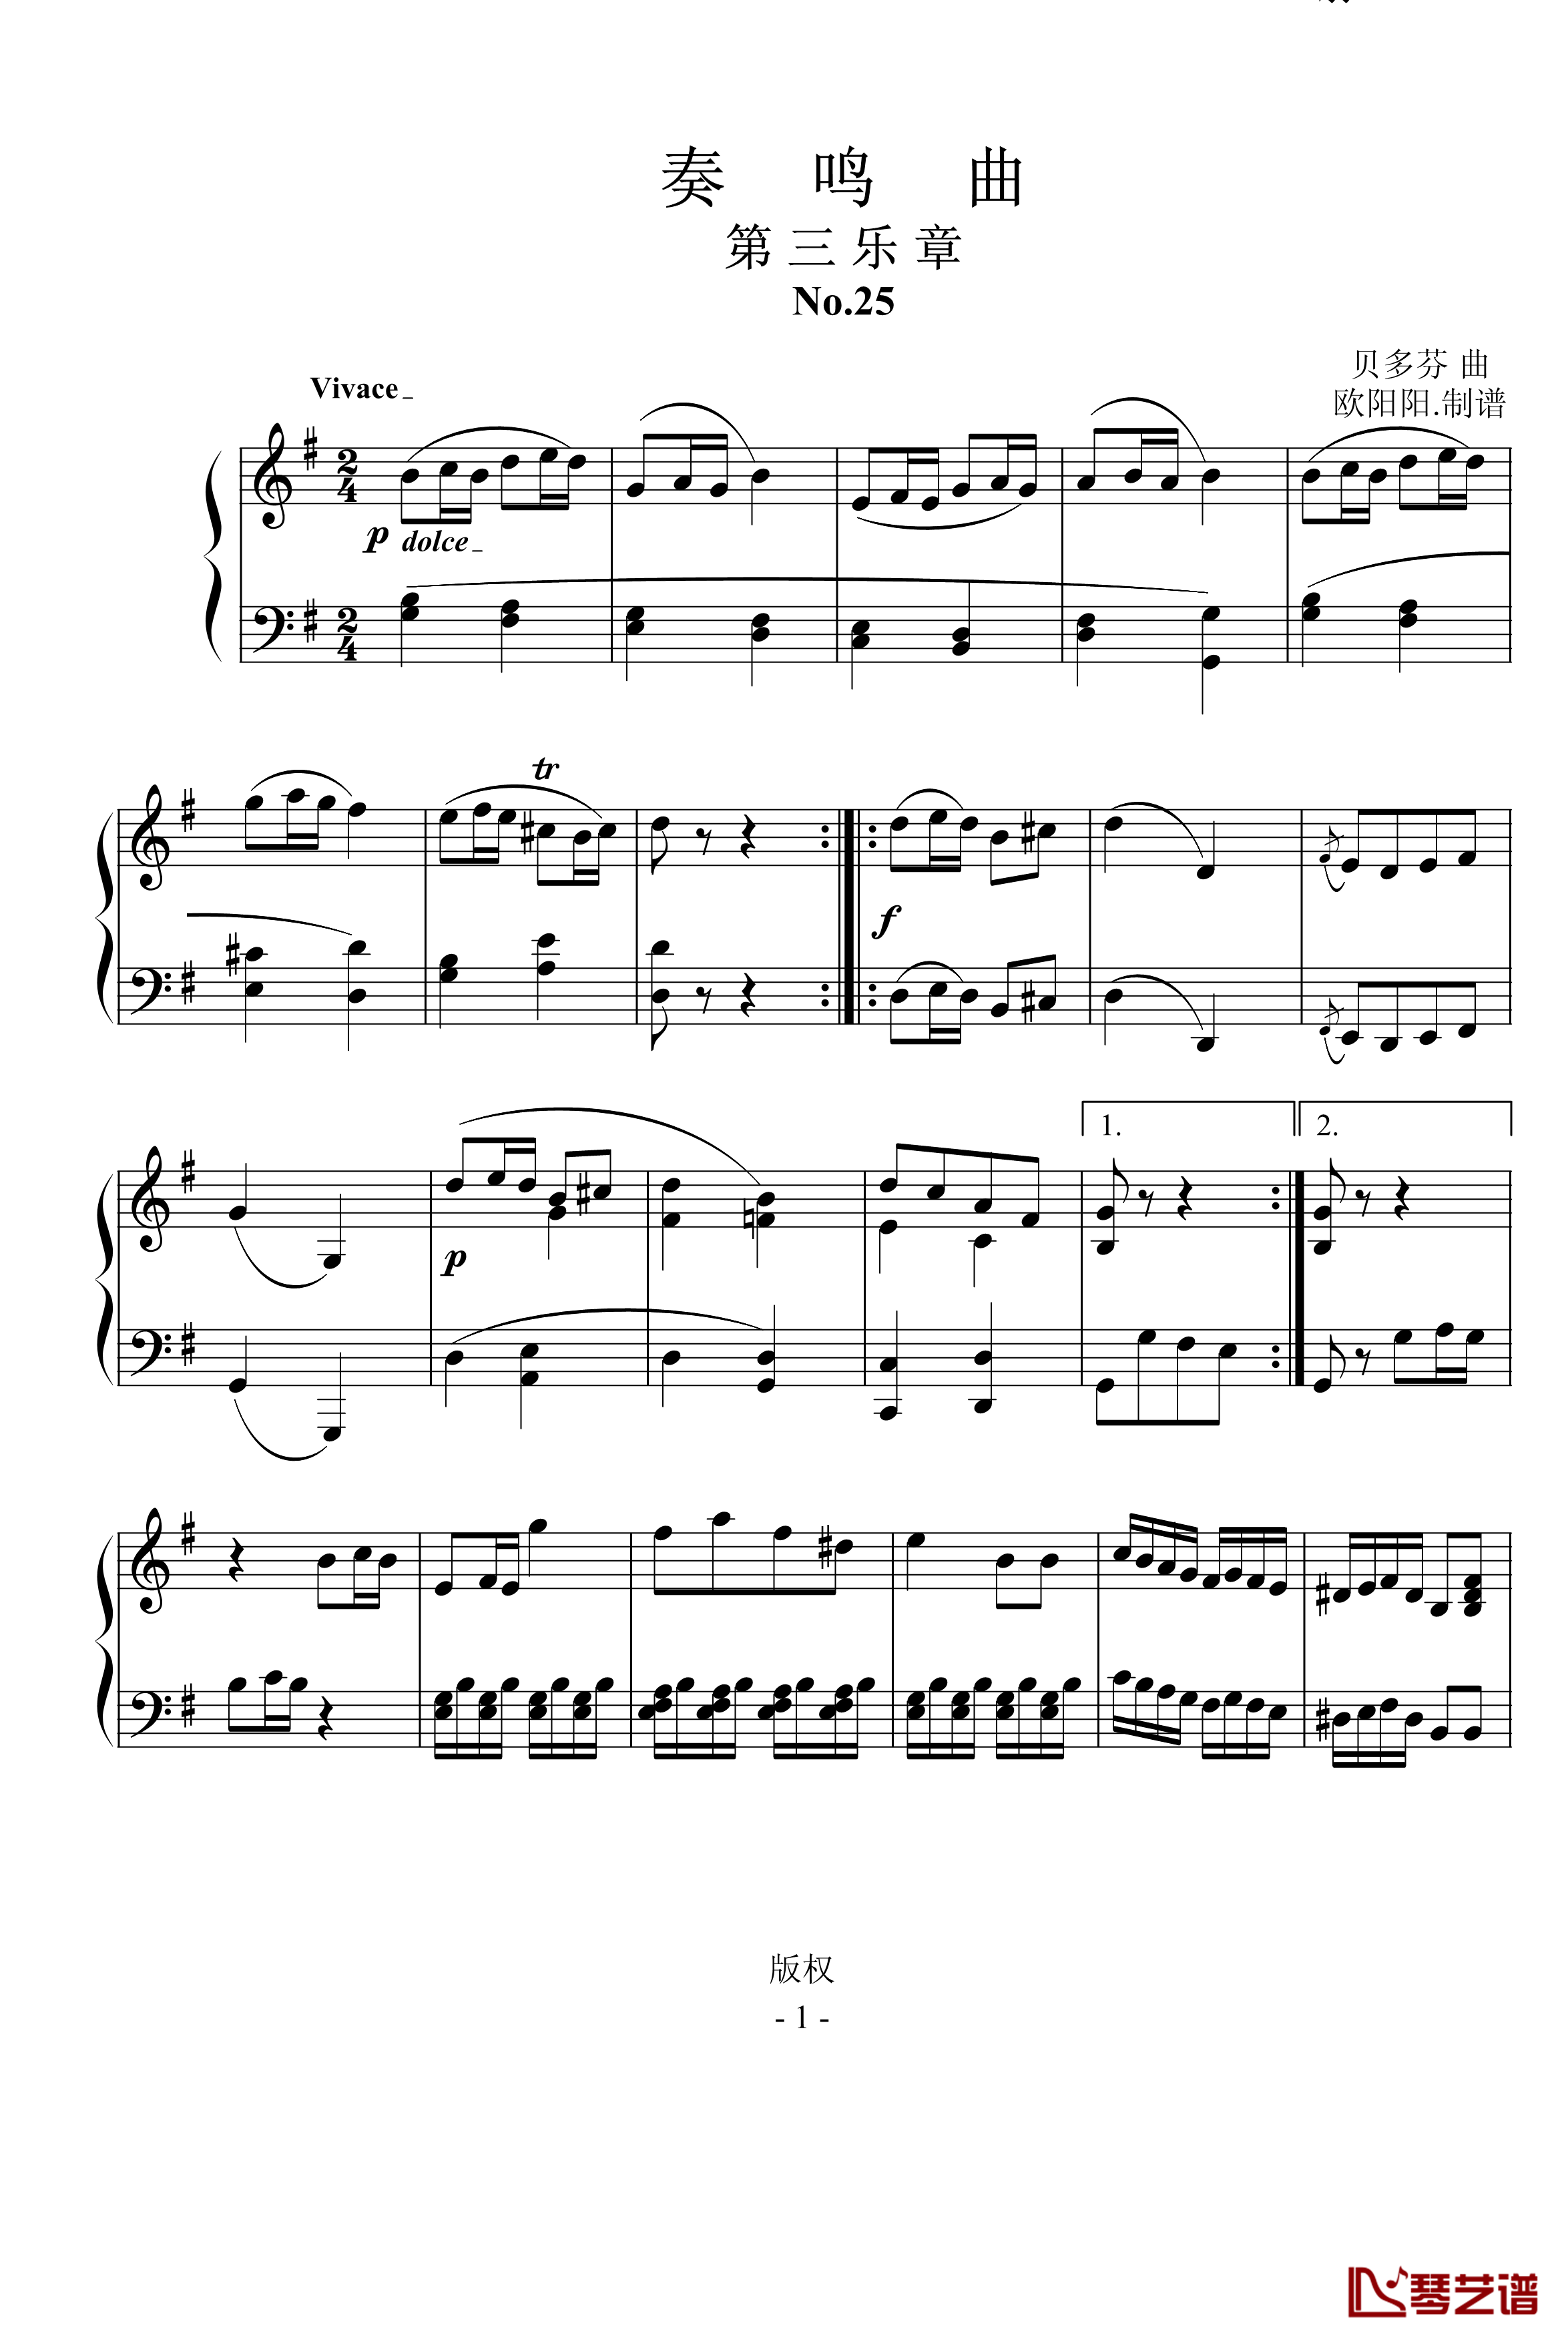 第25奏鸣曲第三乐章钢琴谱-贝多芬-beethoven1